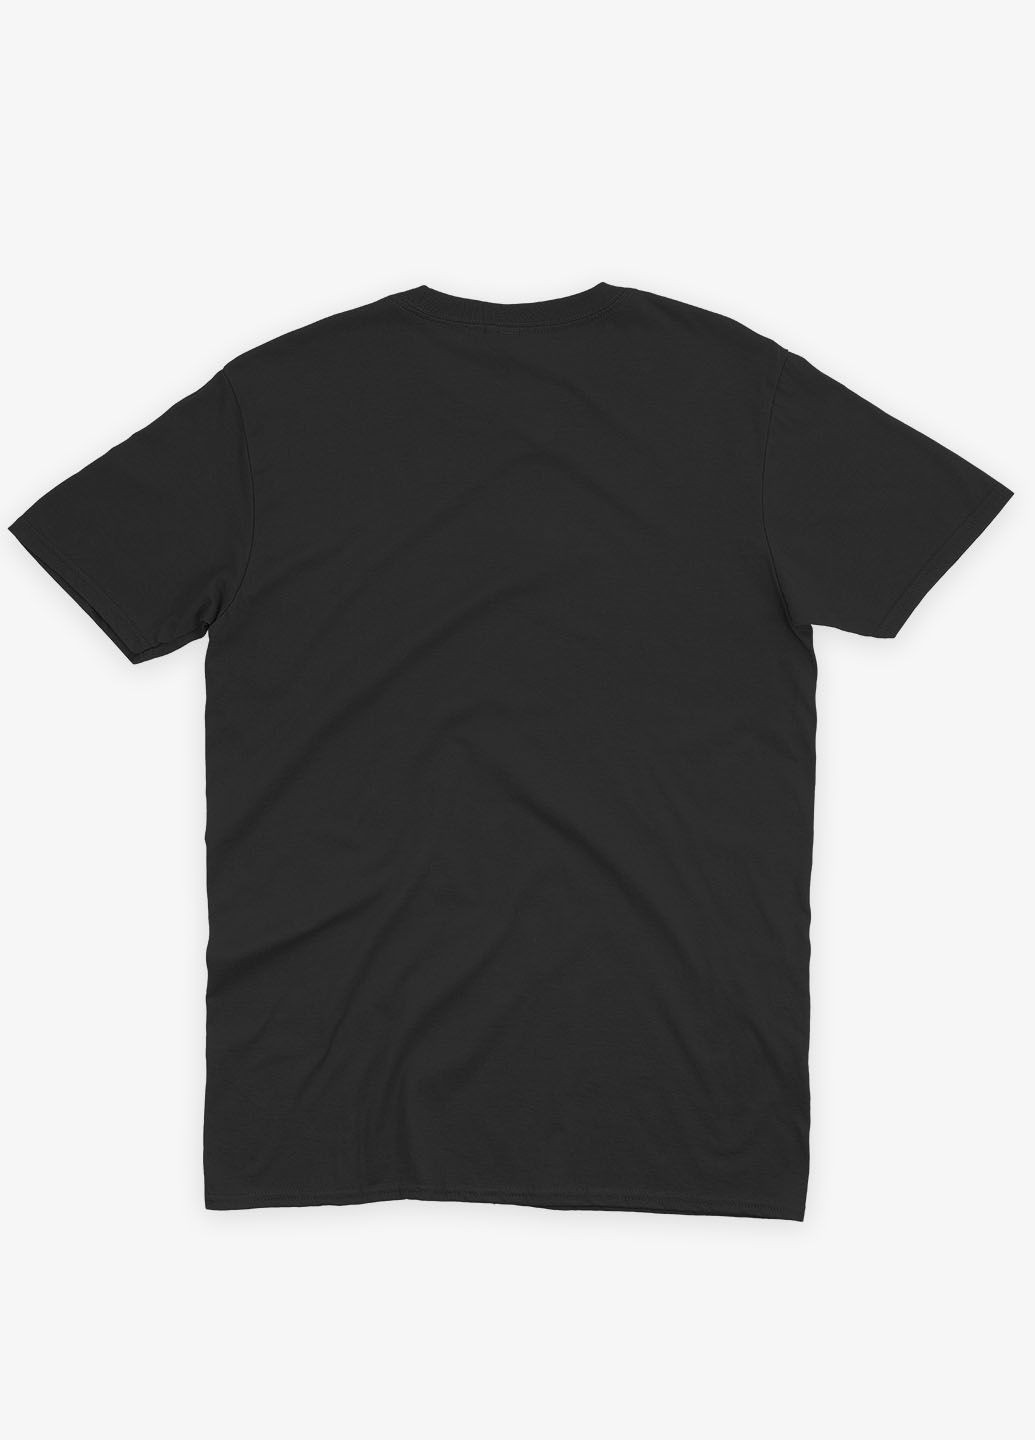 Черная мужская футболка с рок-принтом "metallica" (ts001-3-bl-004-2-208) Modno